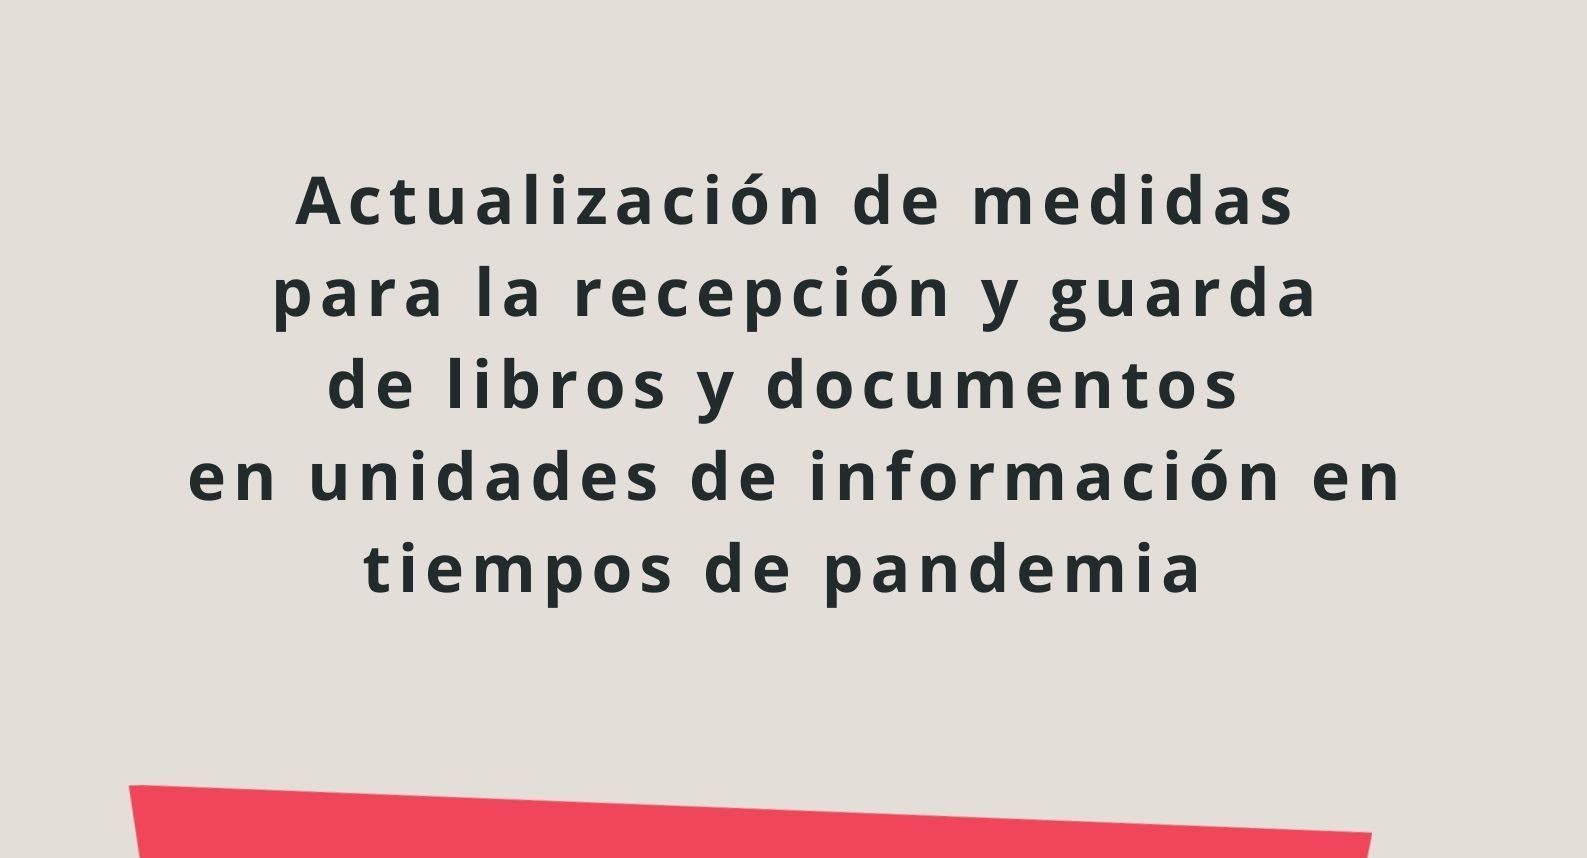 imagen con el texto: actualización de las medidas para la recepción y guarda de libros y documentos en unidades de información durante la pandemia